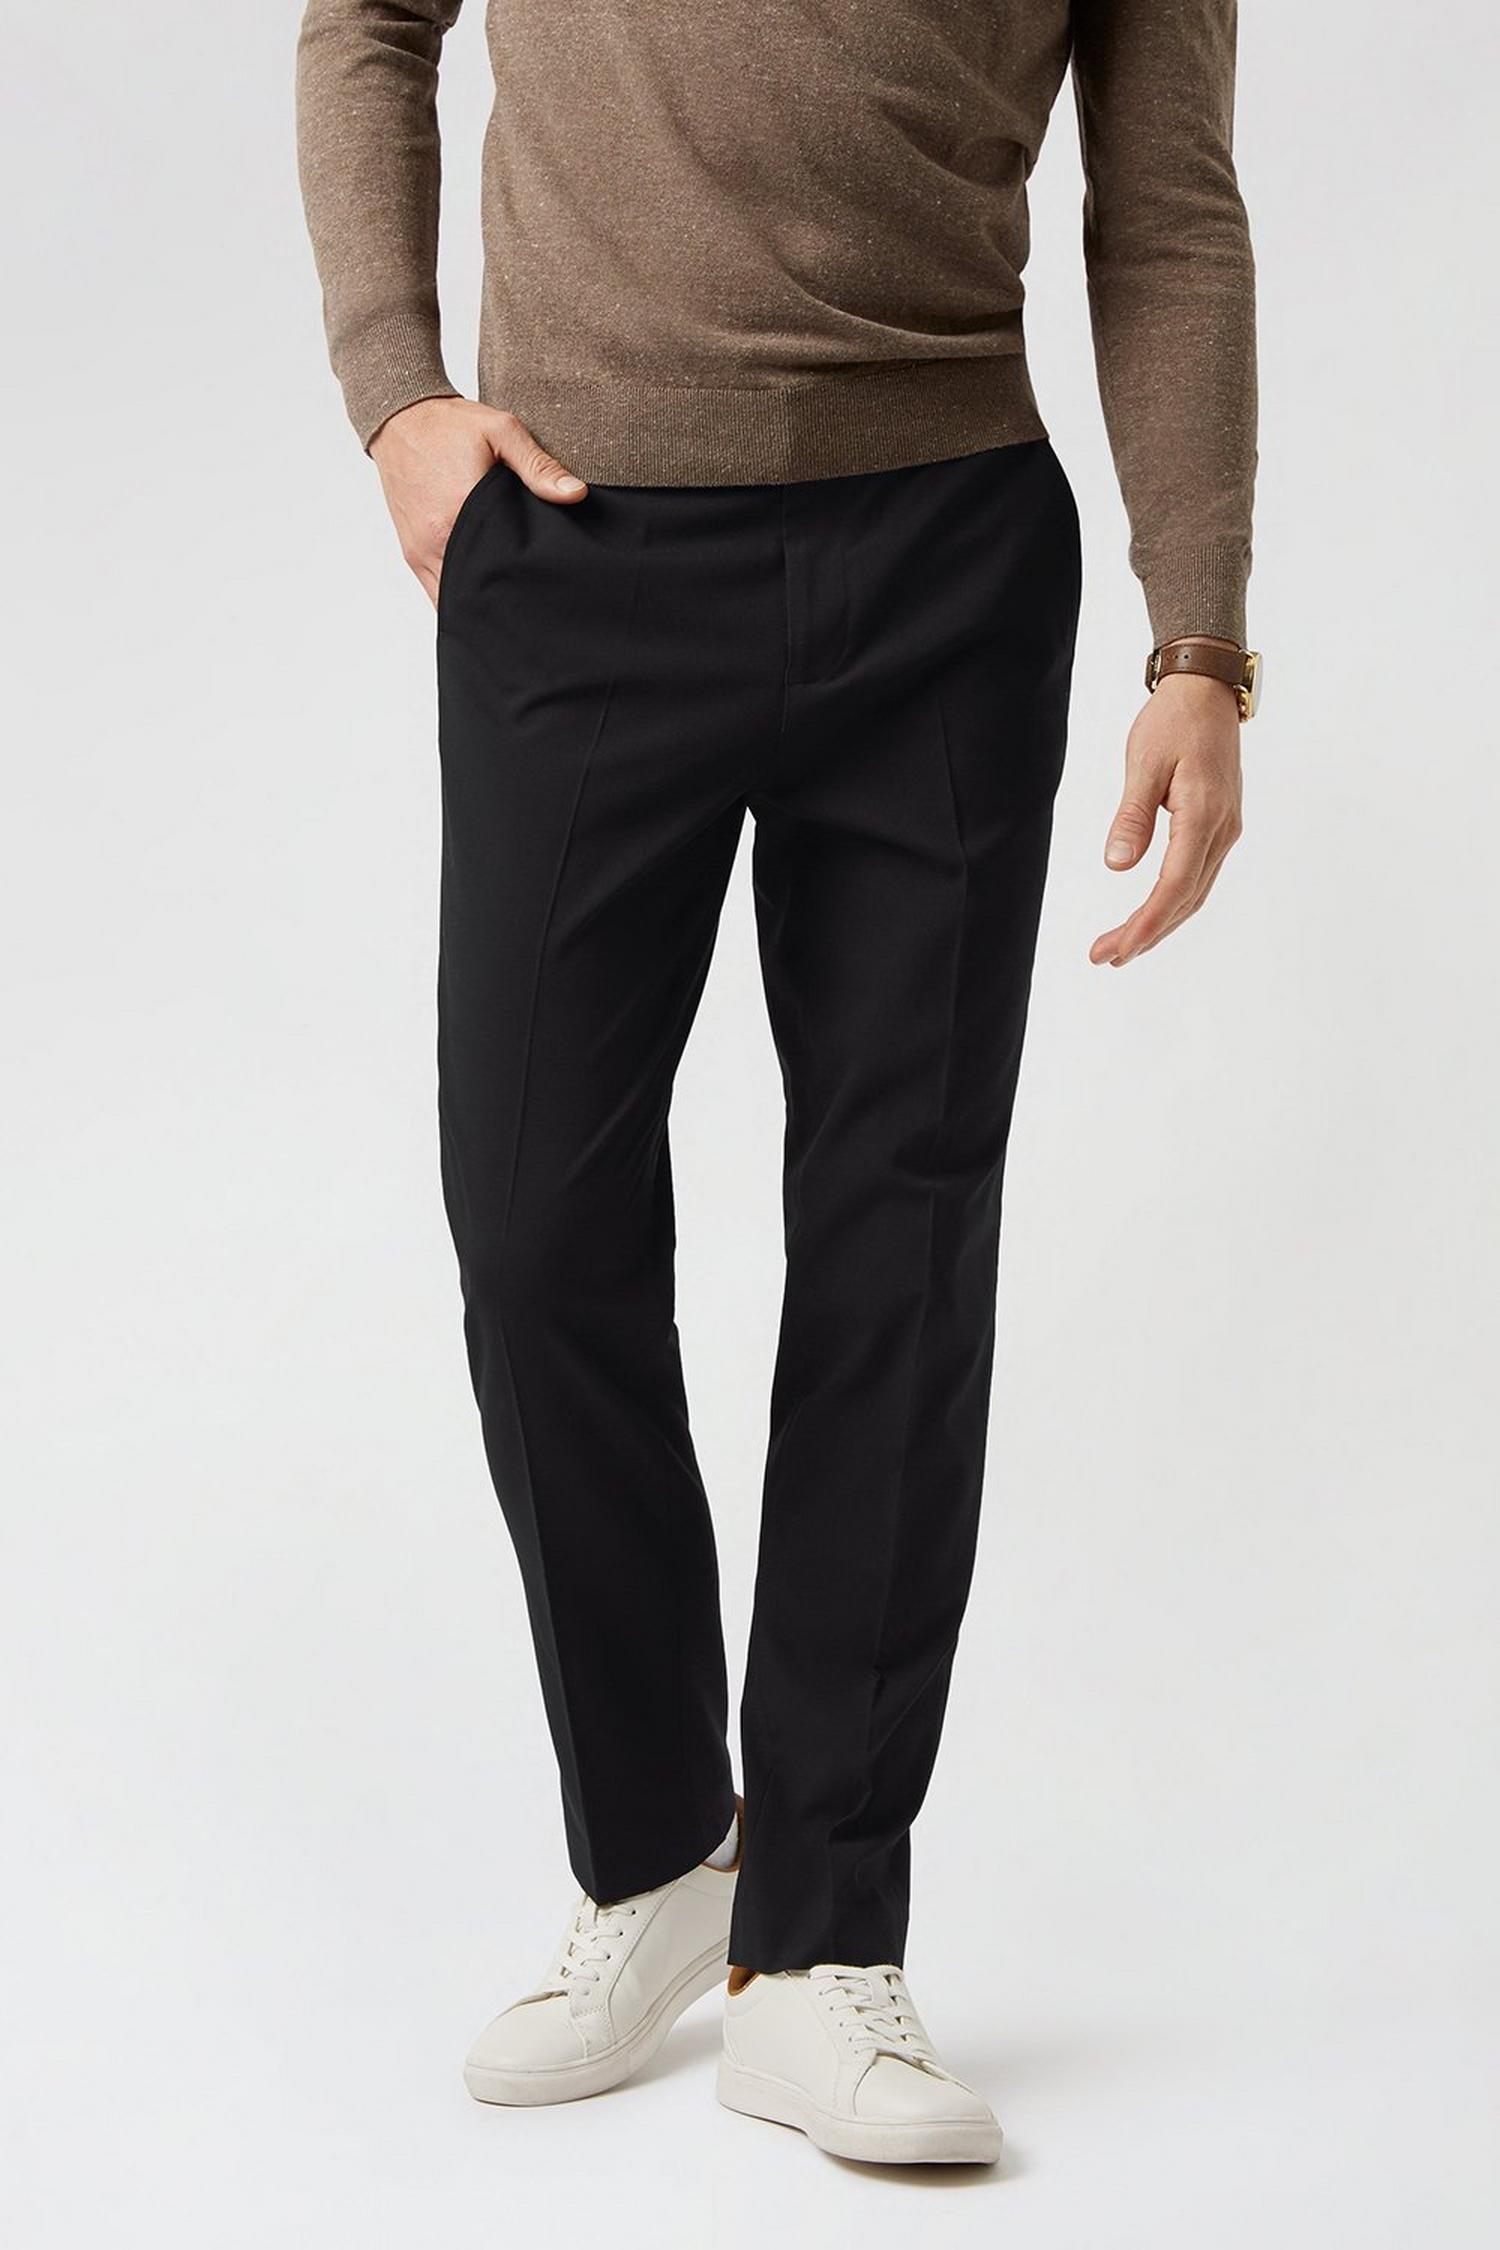 Black Essential Eco Slim Fit Suit Trousers | Burton UK